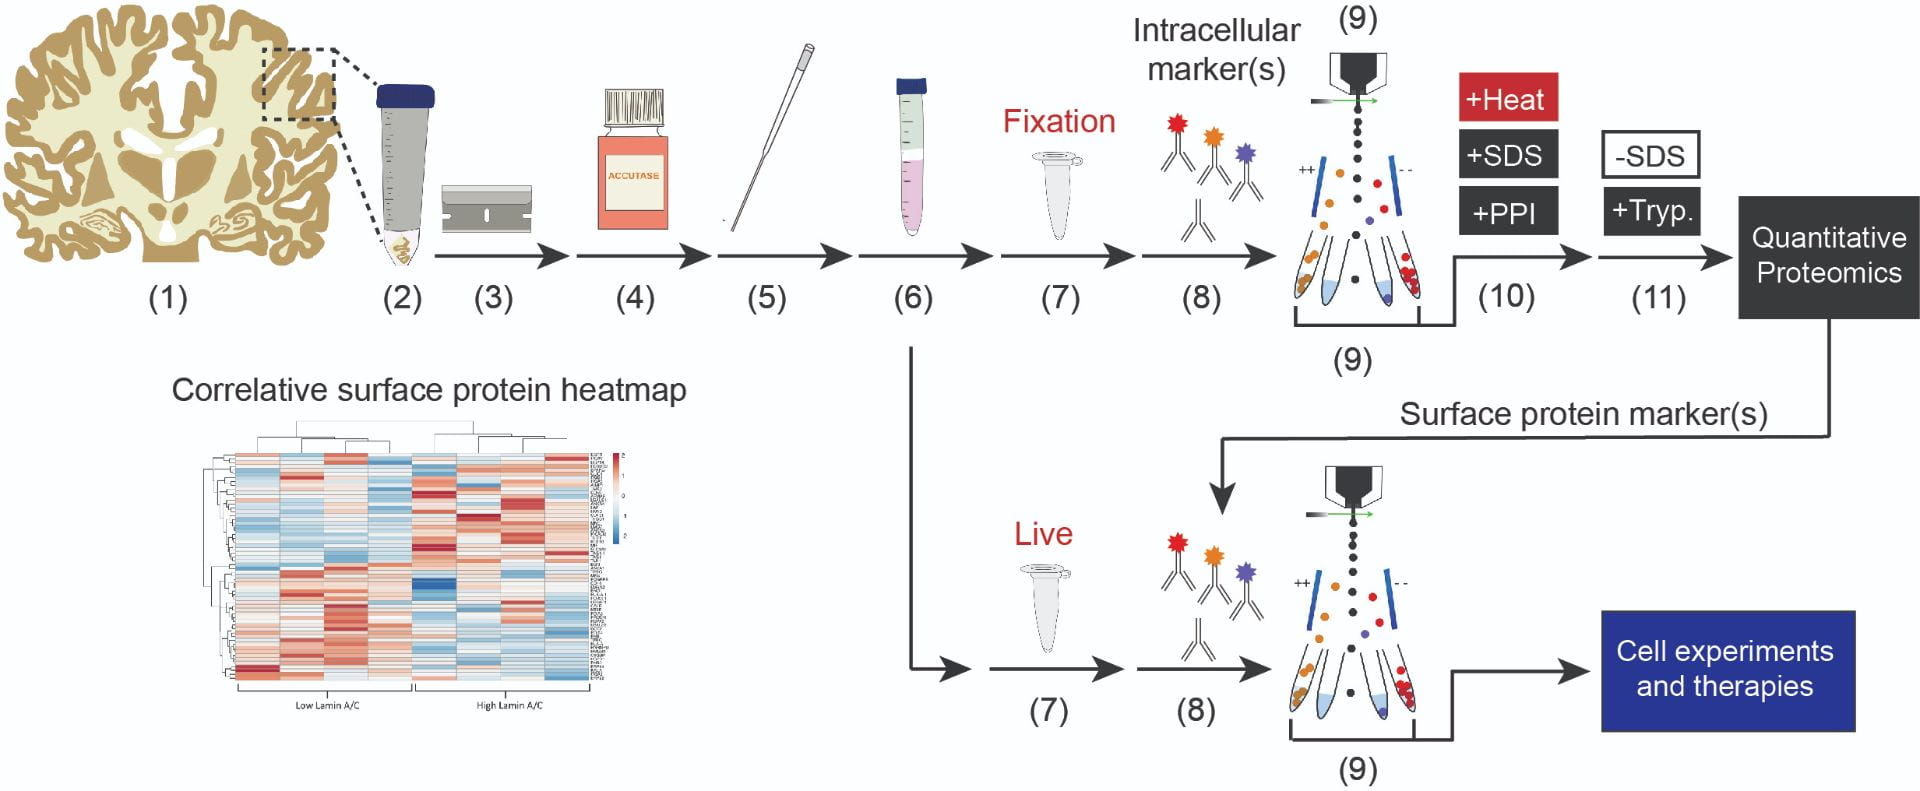 FITSAR methodology image for biomarker identification